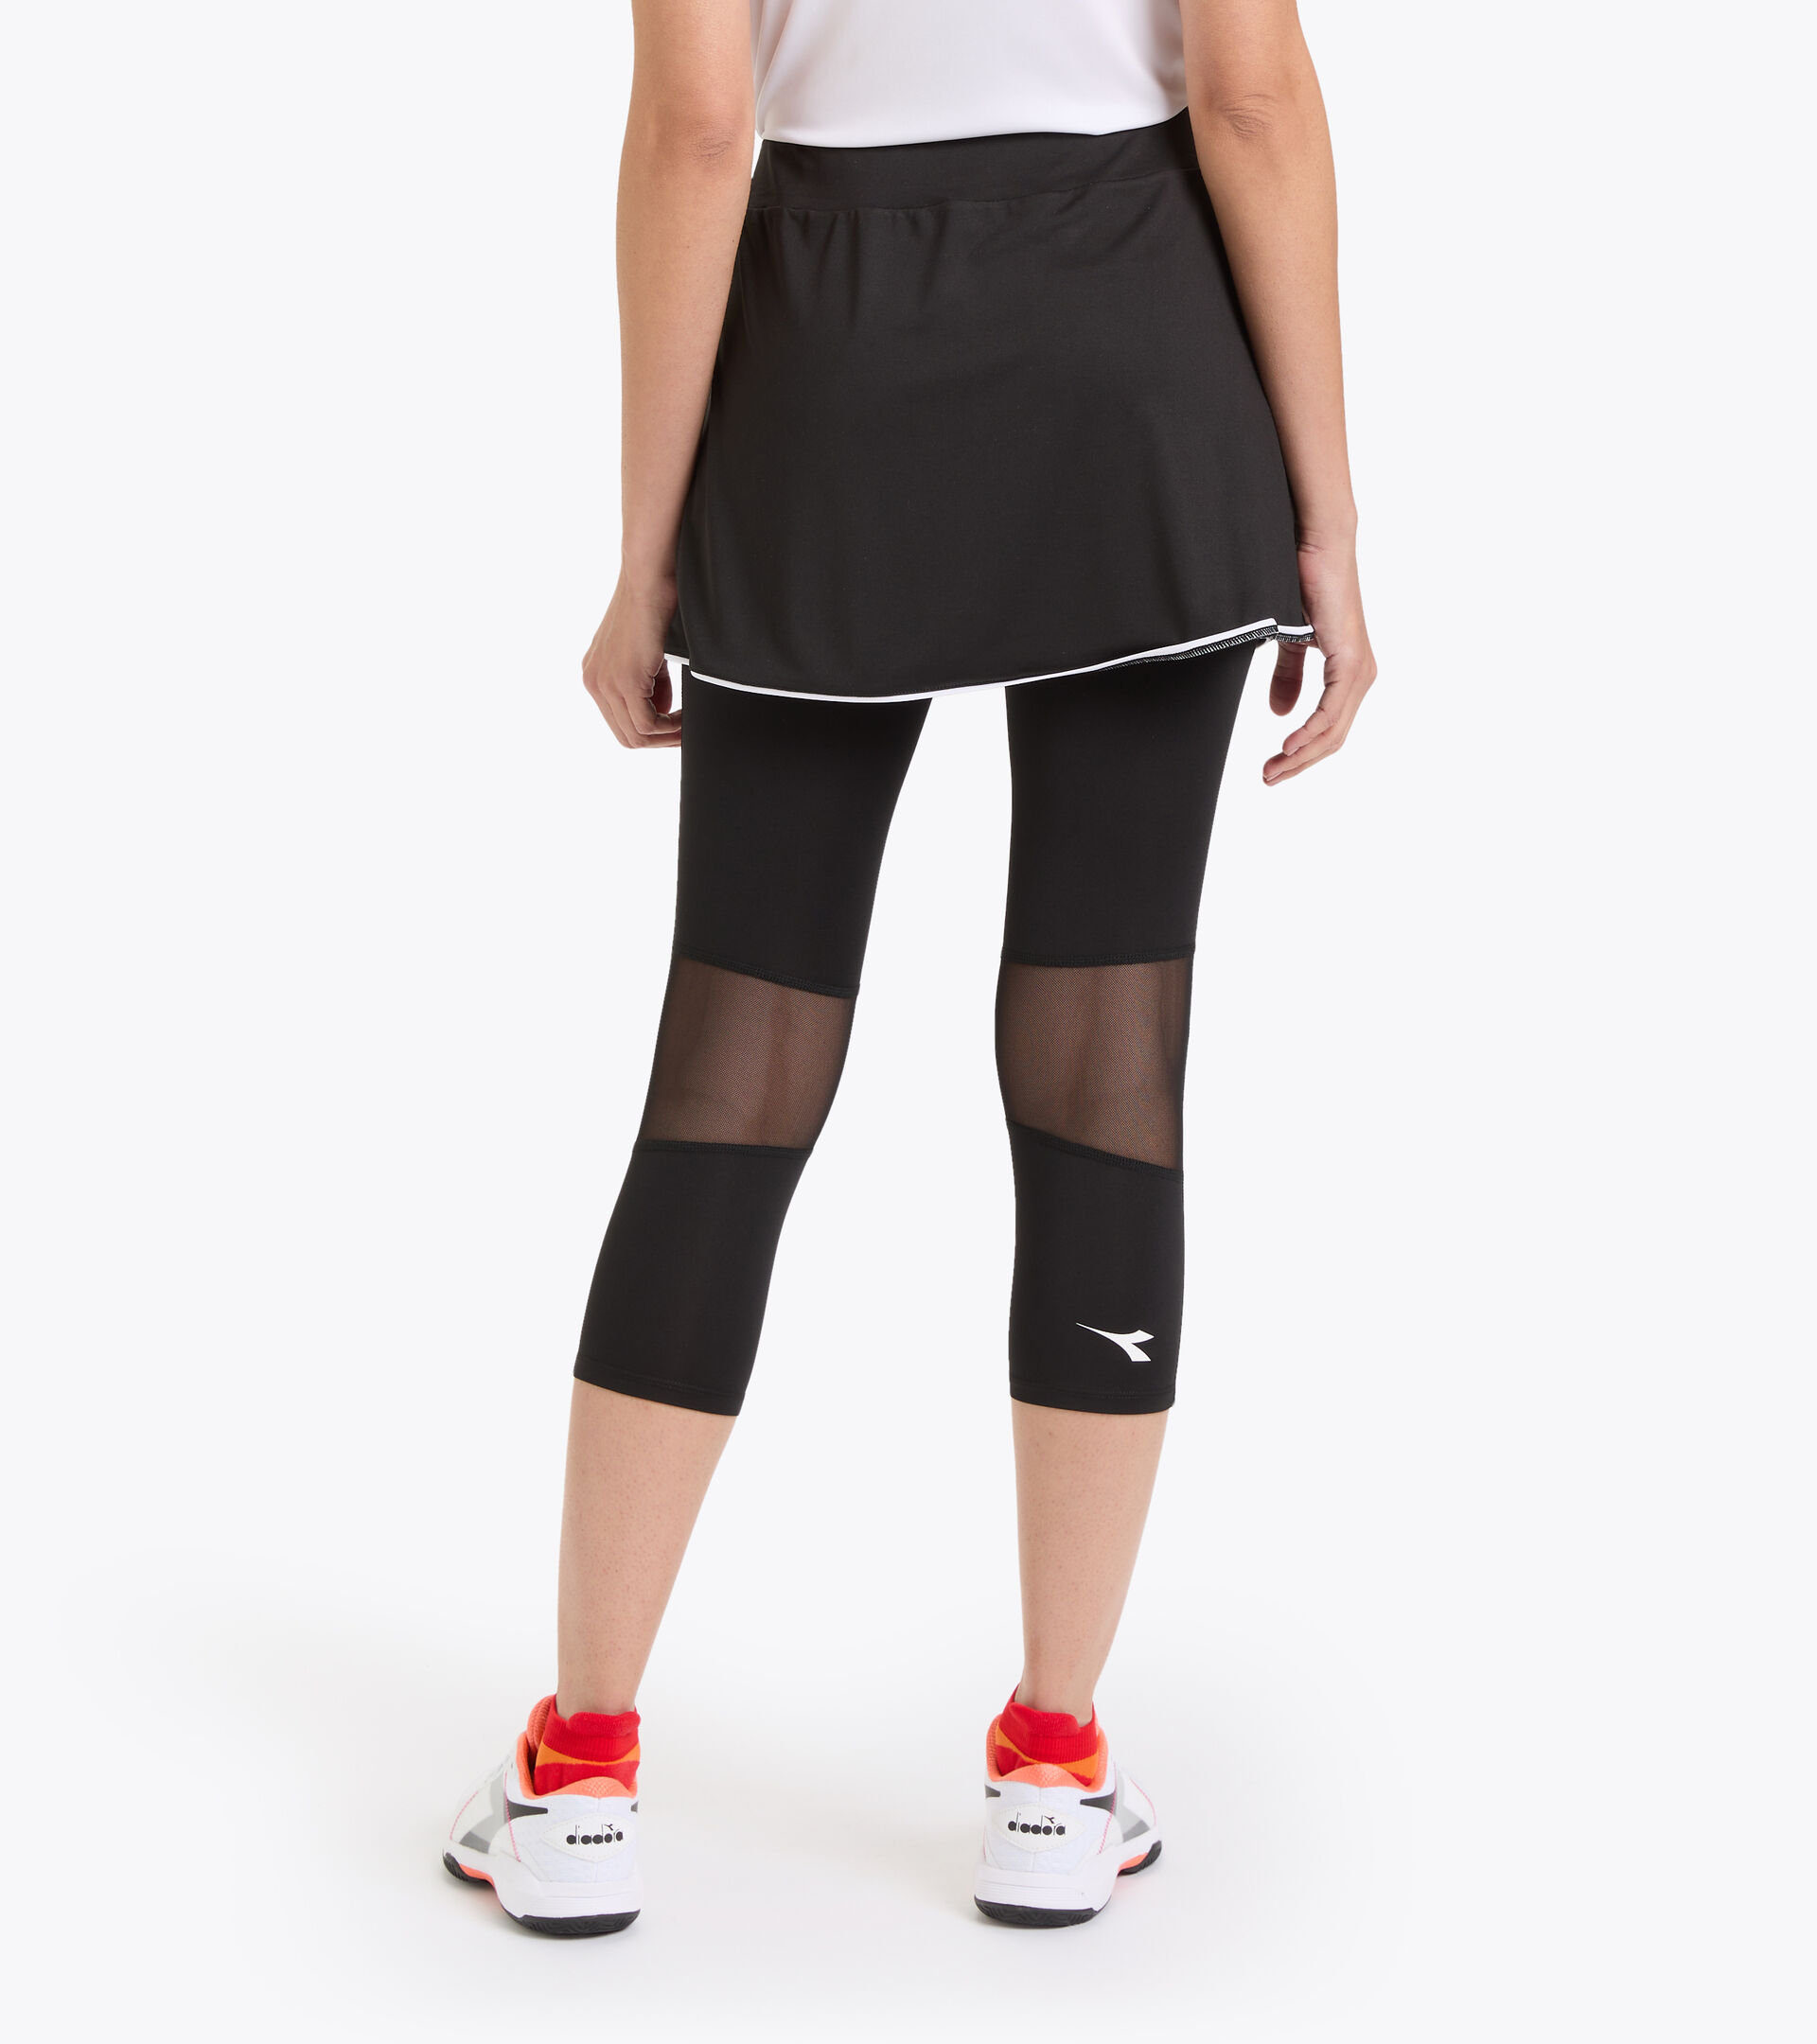 L. POWER SKIRT Online tennis US - Polyester Store Women skirt Diadora 